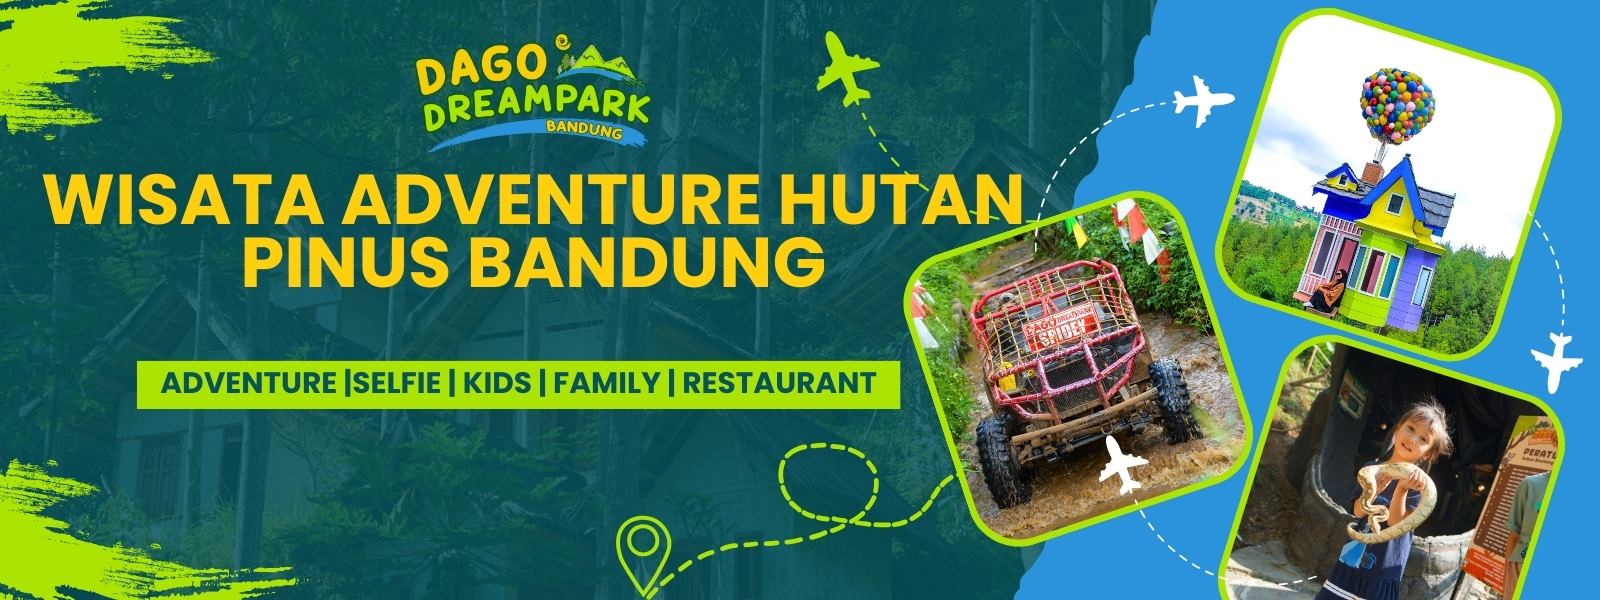 Wisata Bandung Dago Dreampark